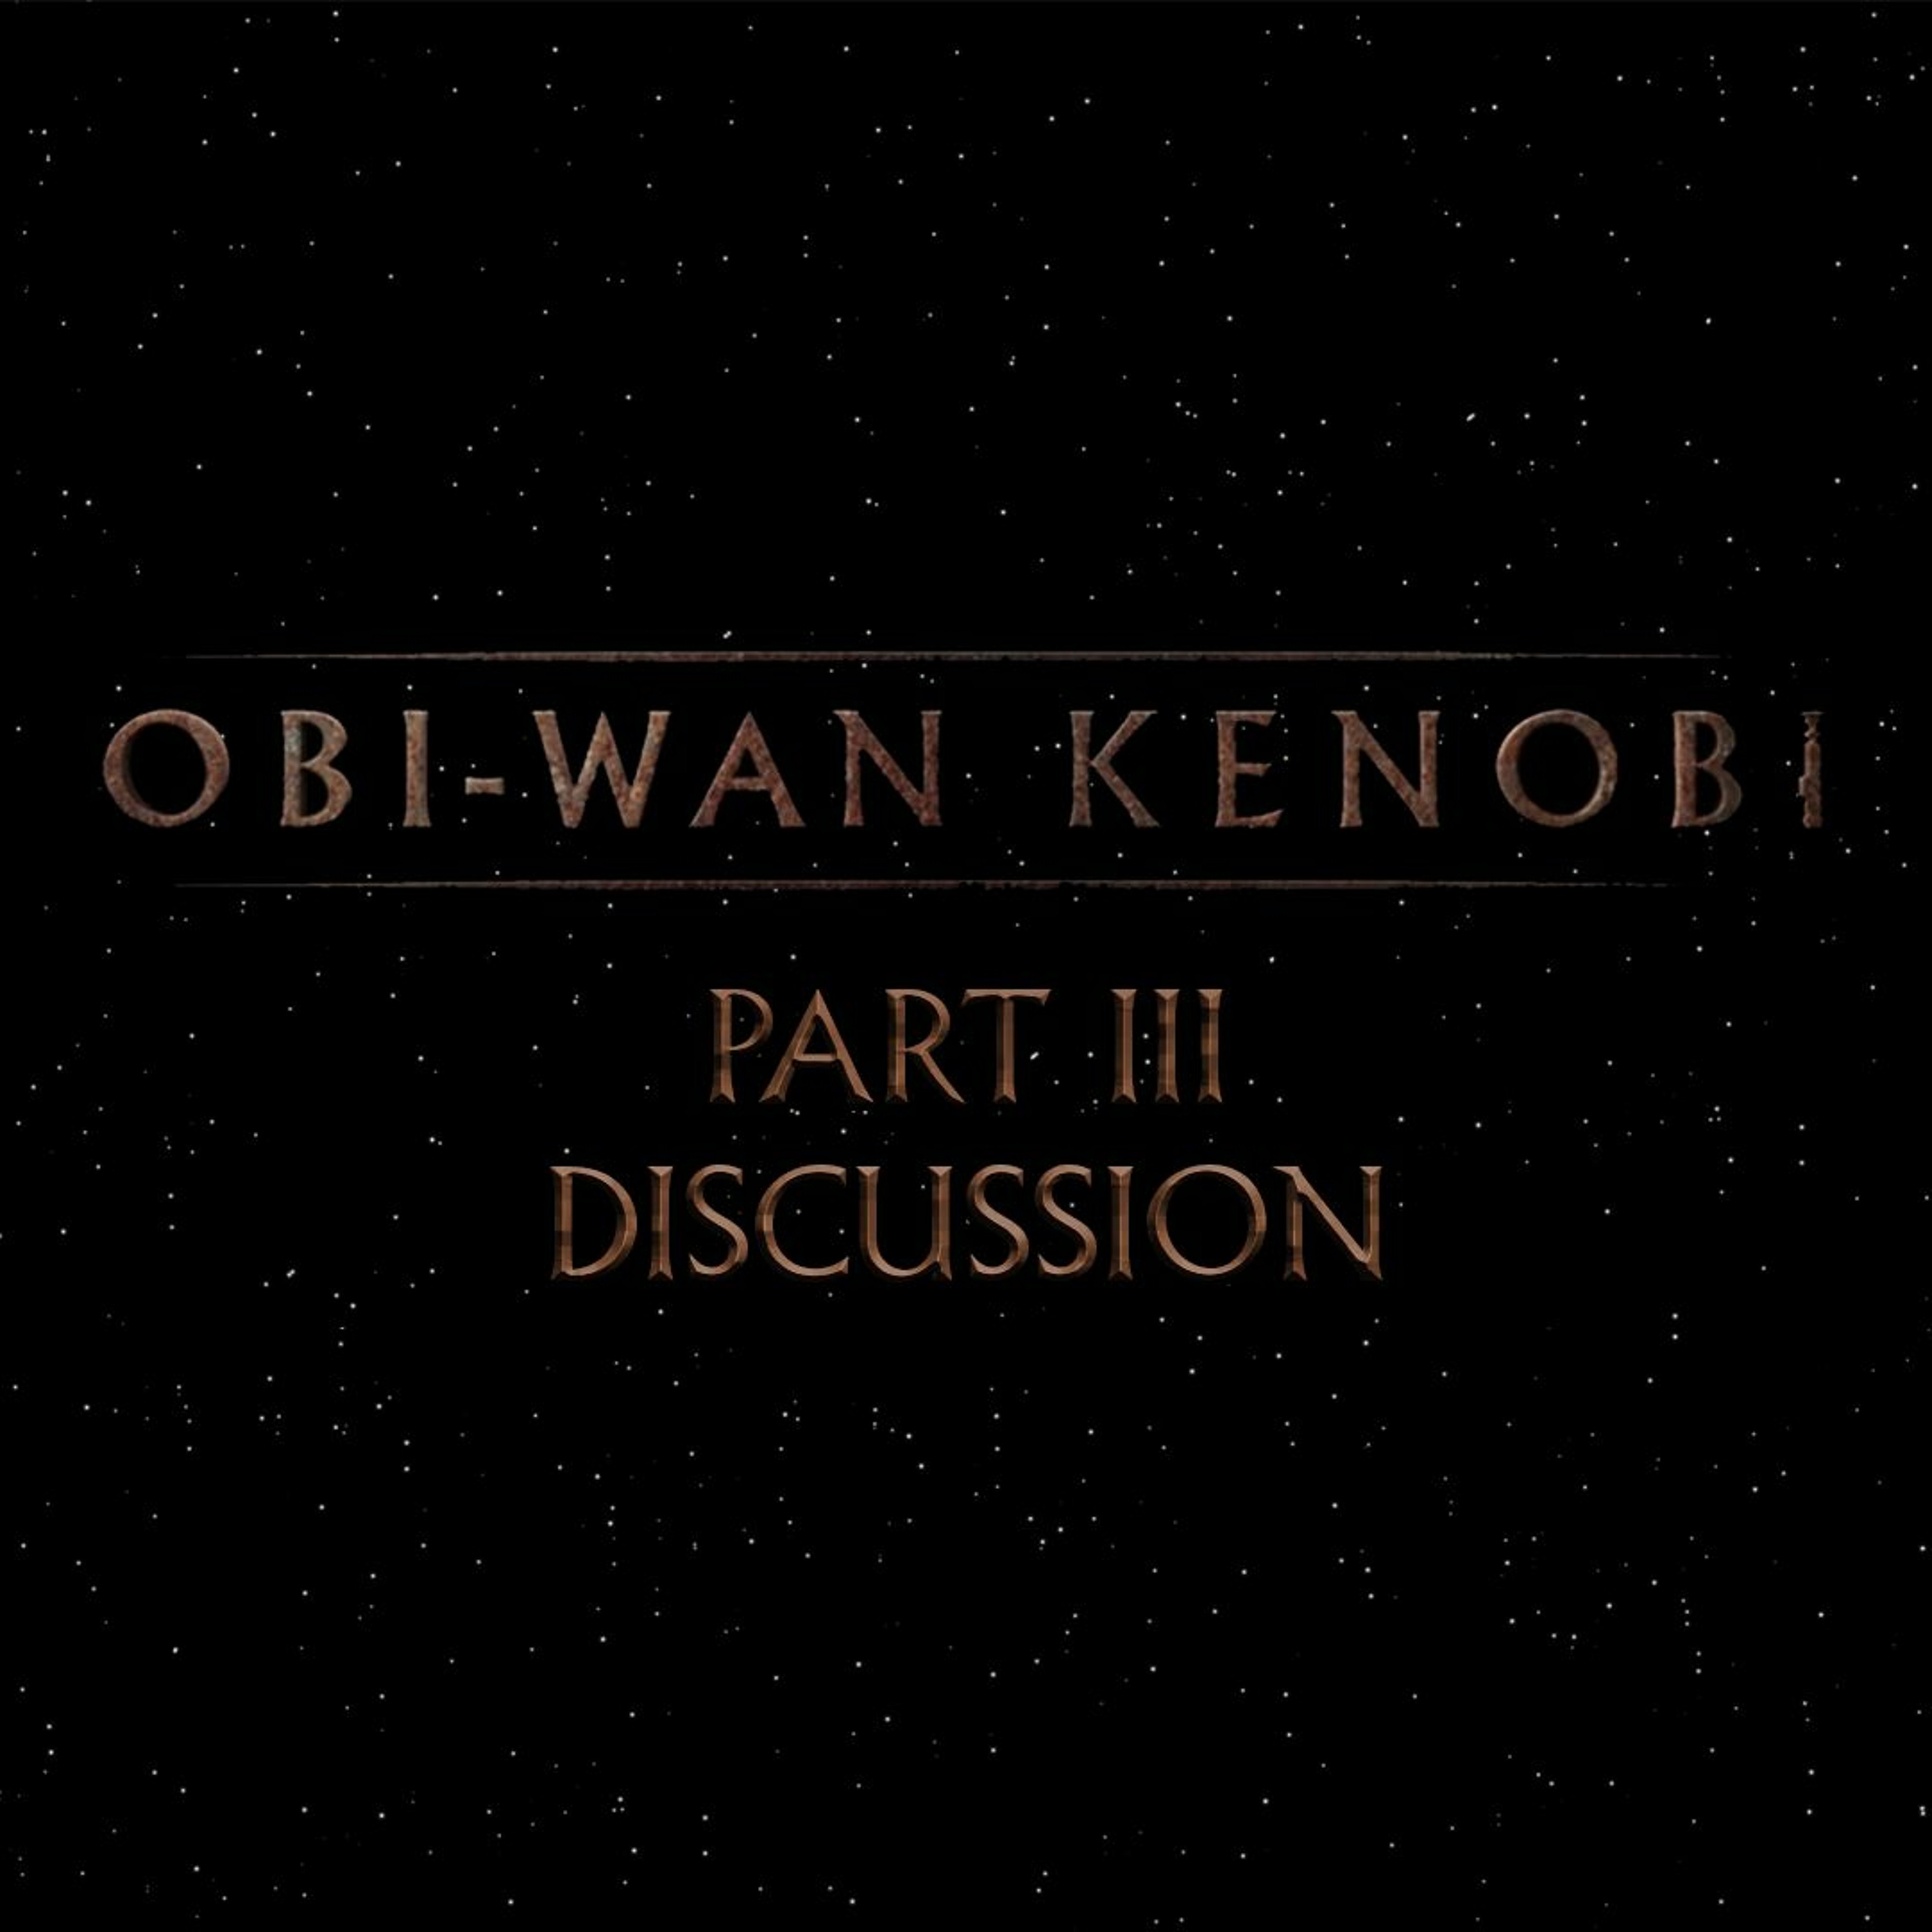 Obi-Wan Kenobi Part III